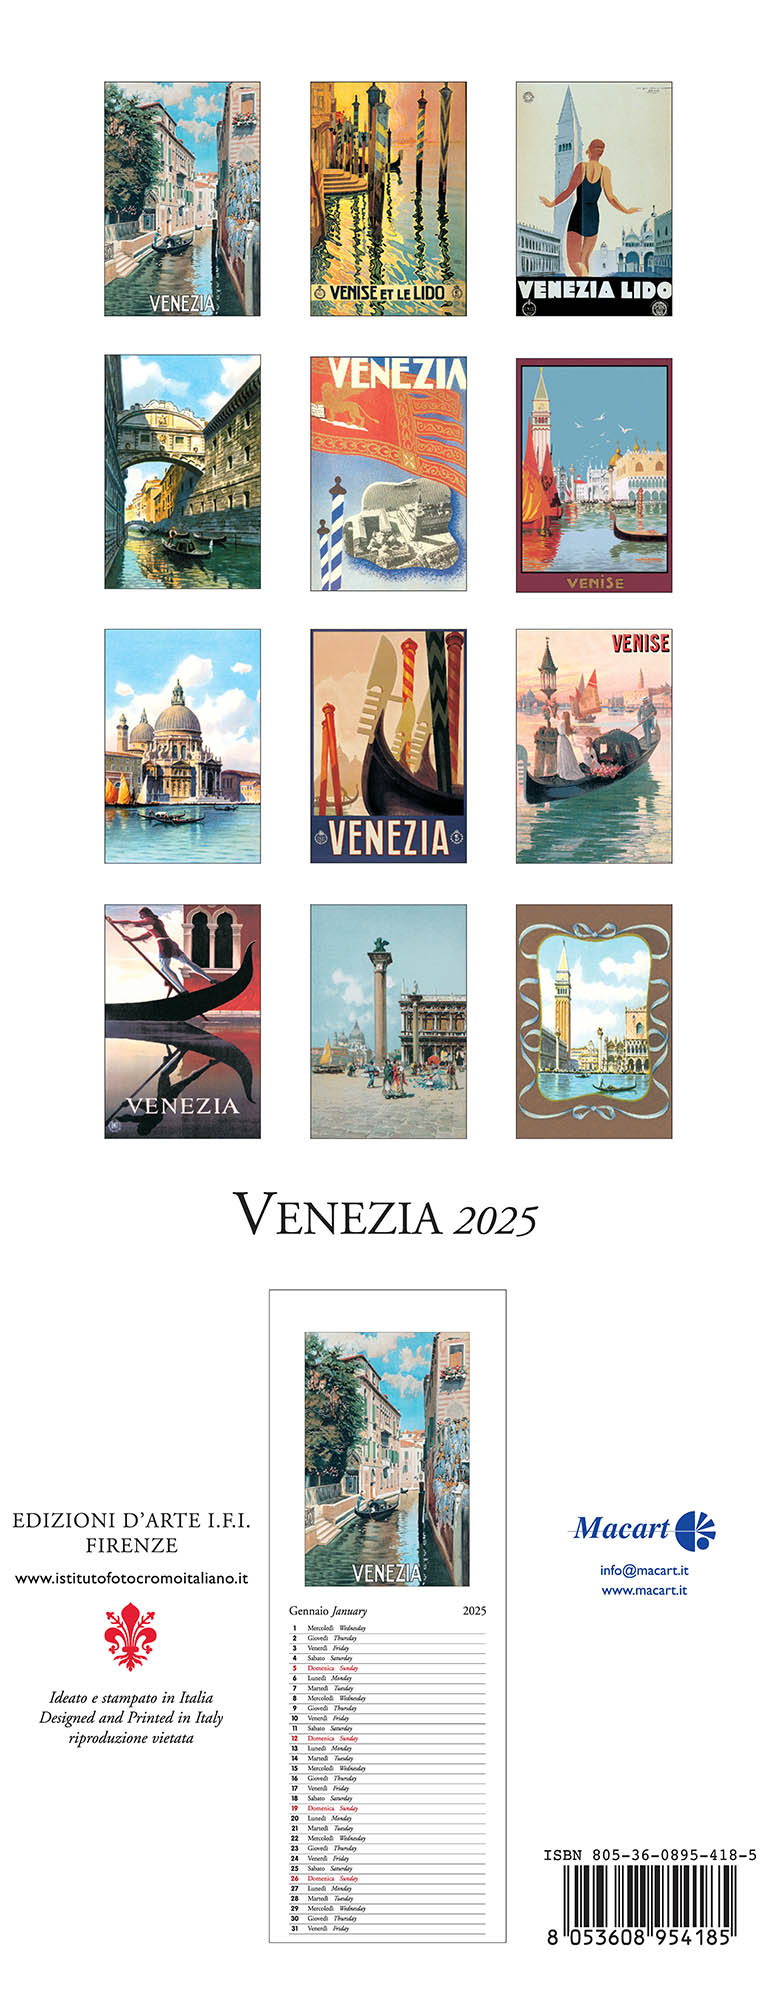 Venice 2025 